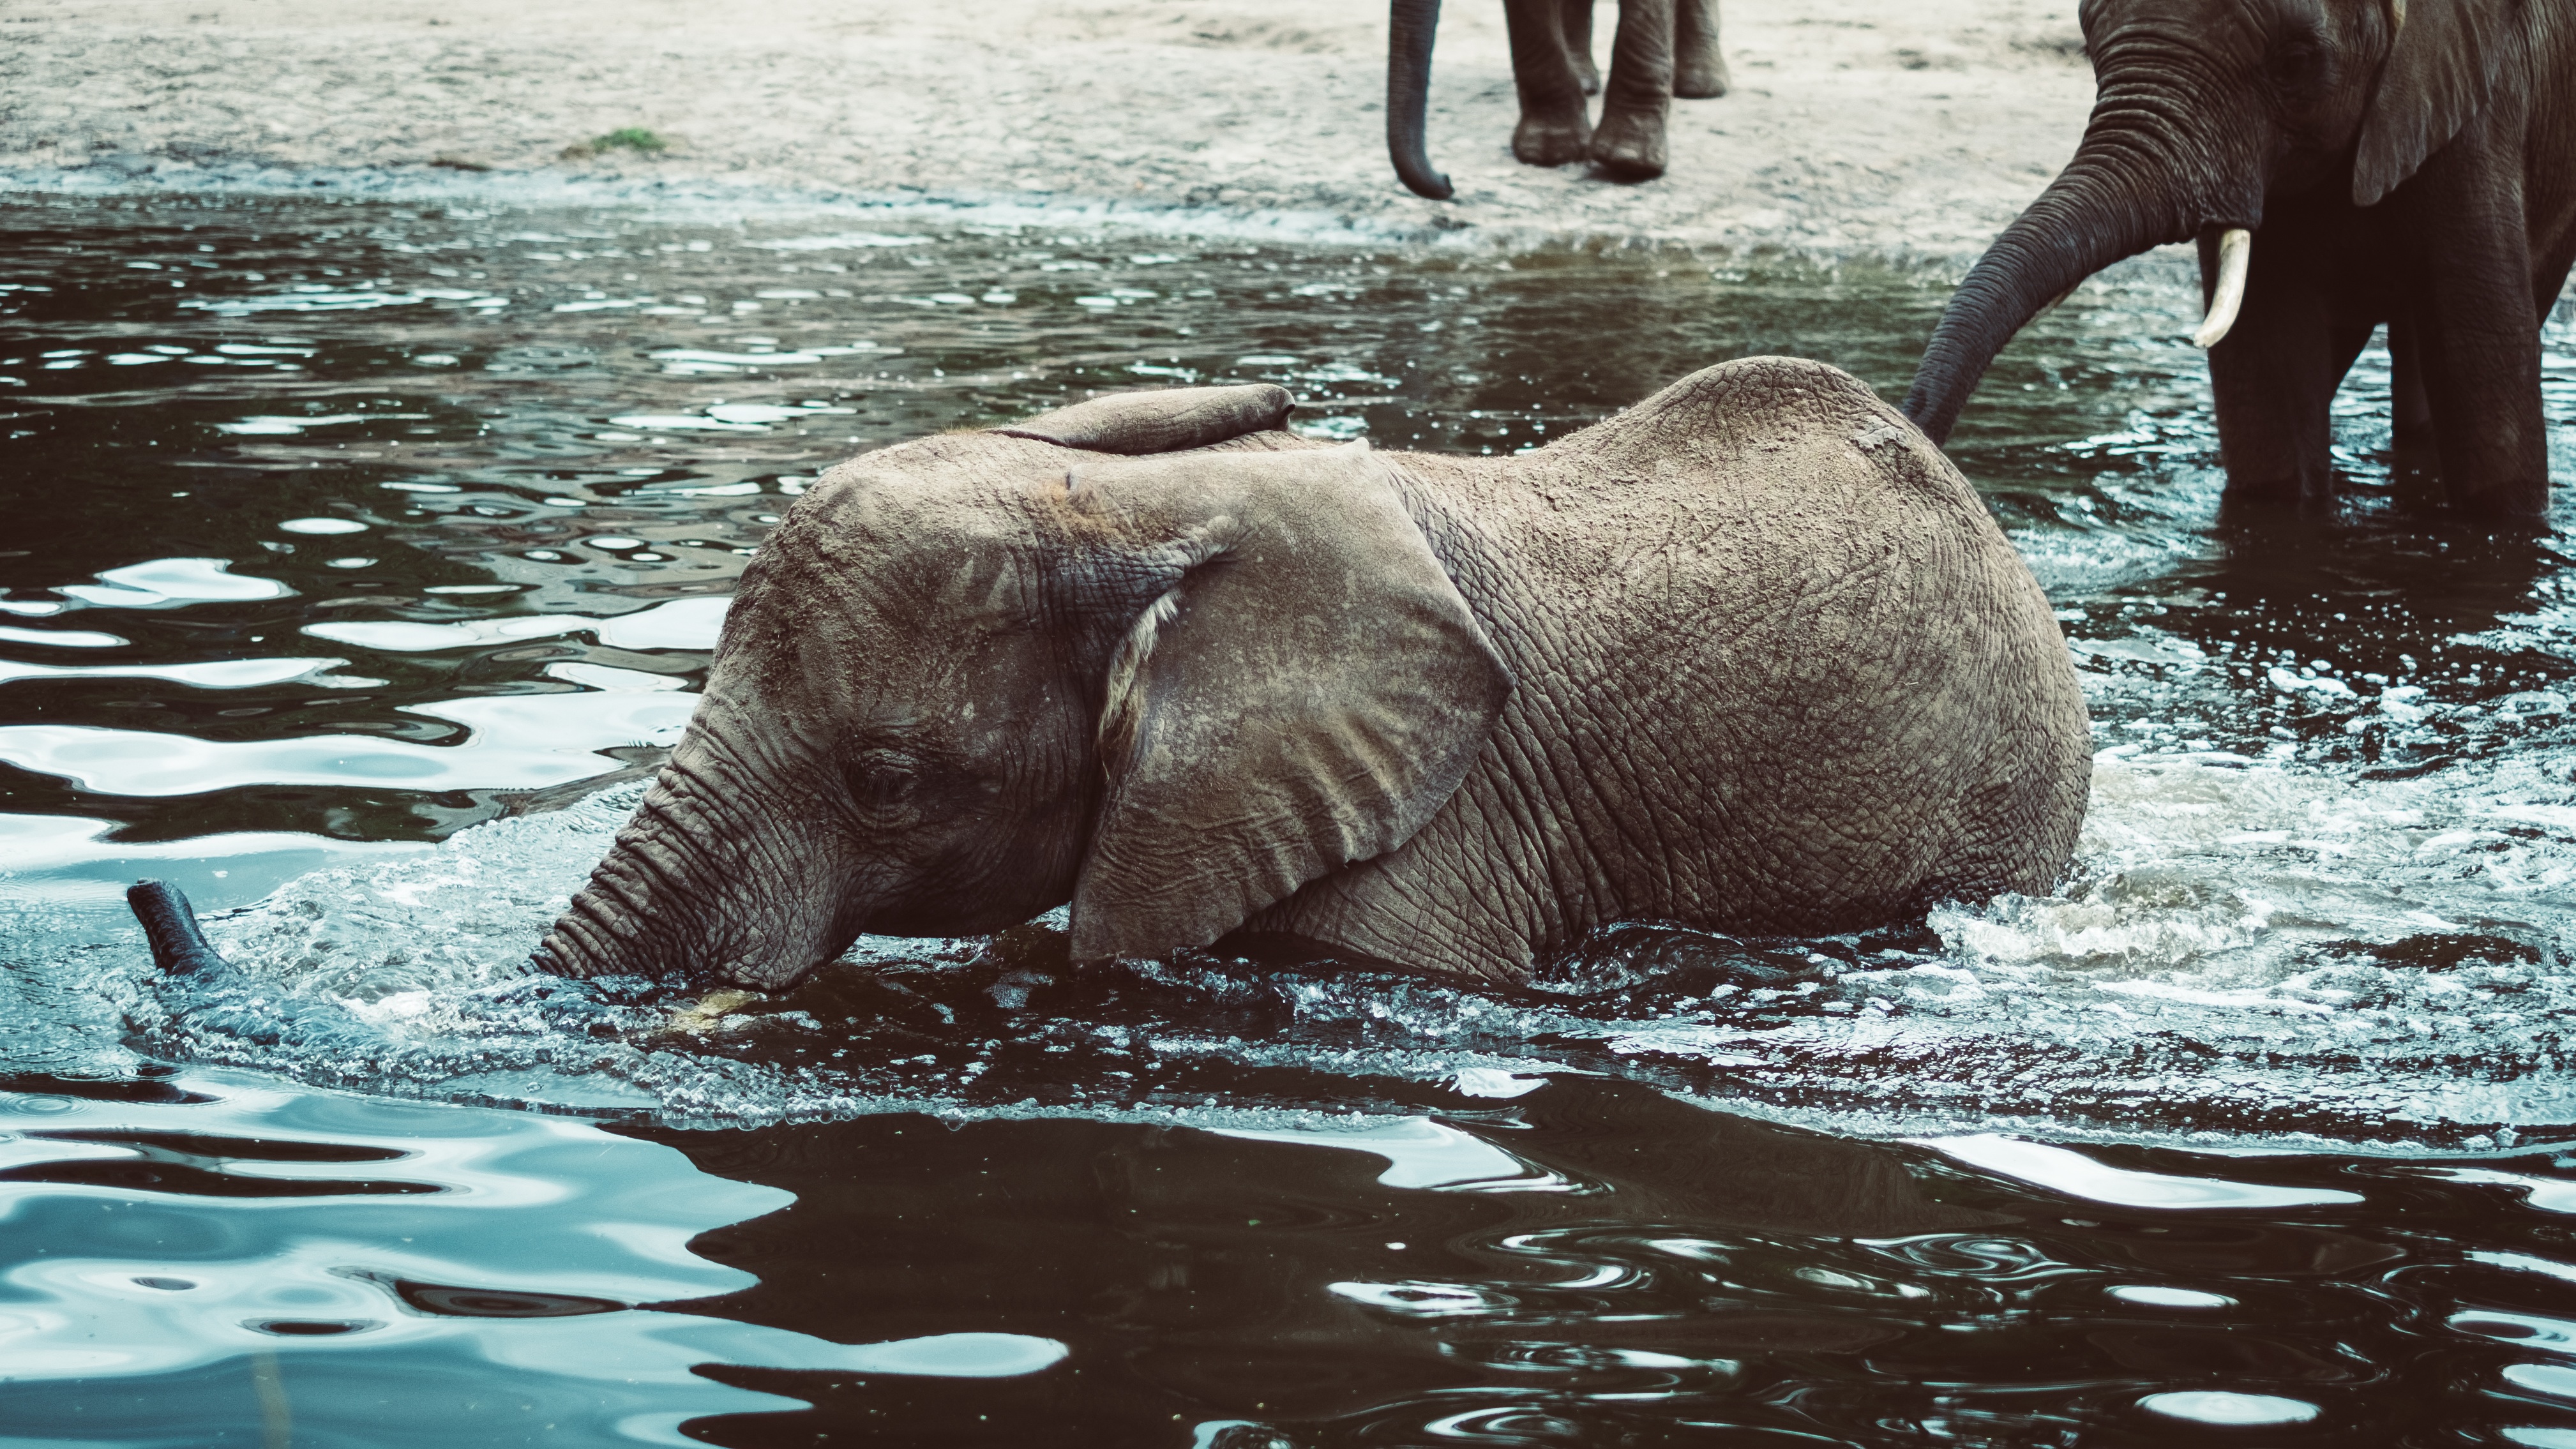 Скачать обои бесплатно Слон, Детеныш, Животные, Вода картинка на рабочий стол ПК